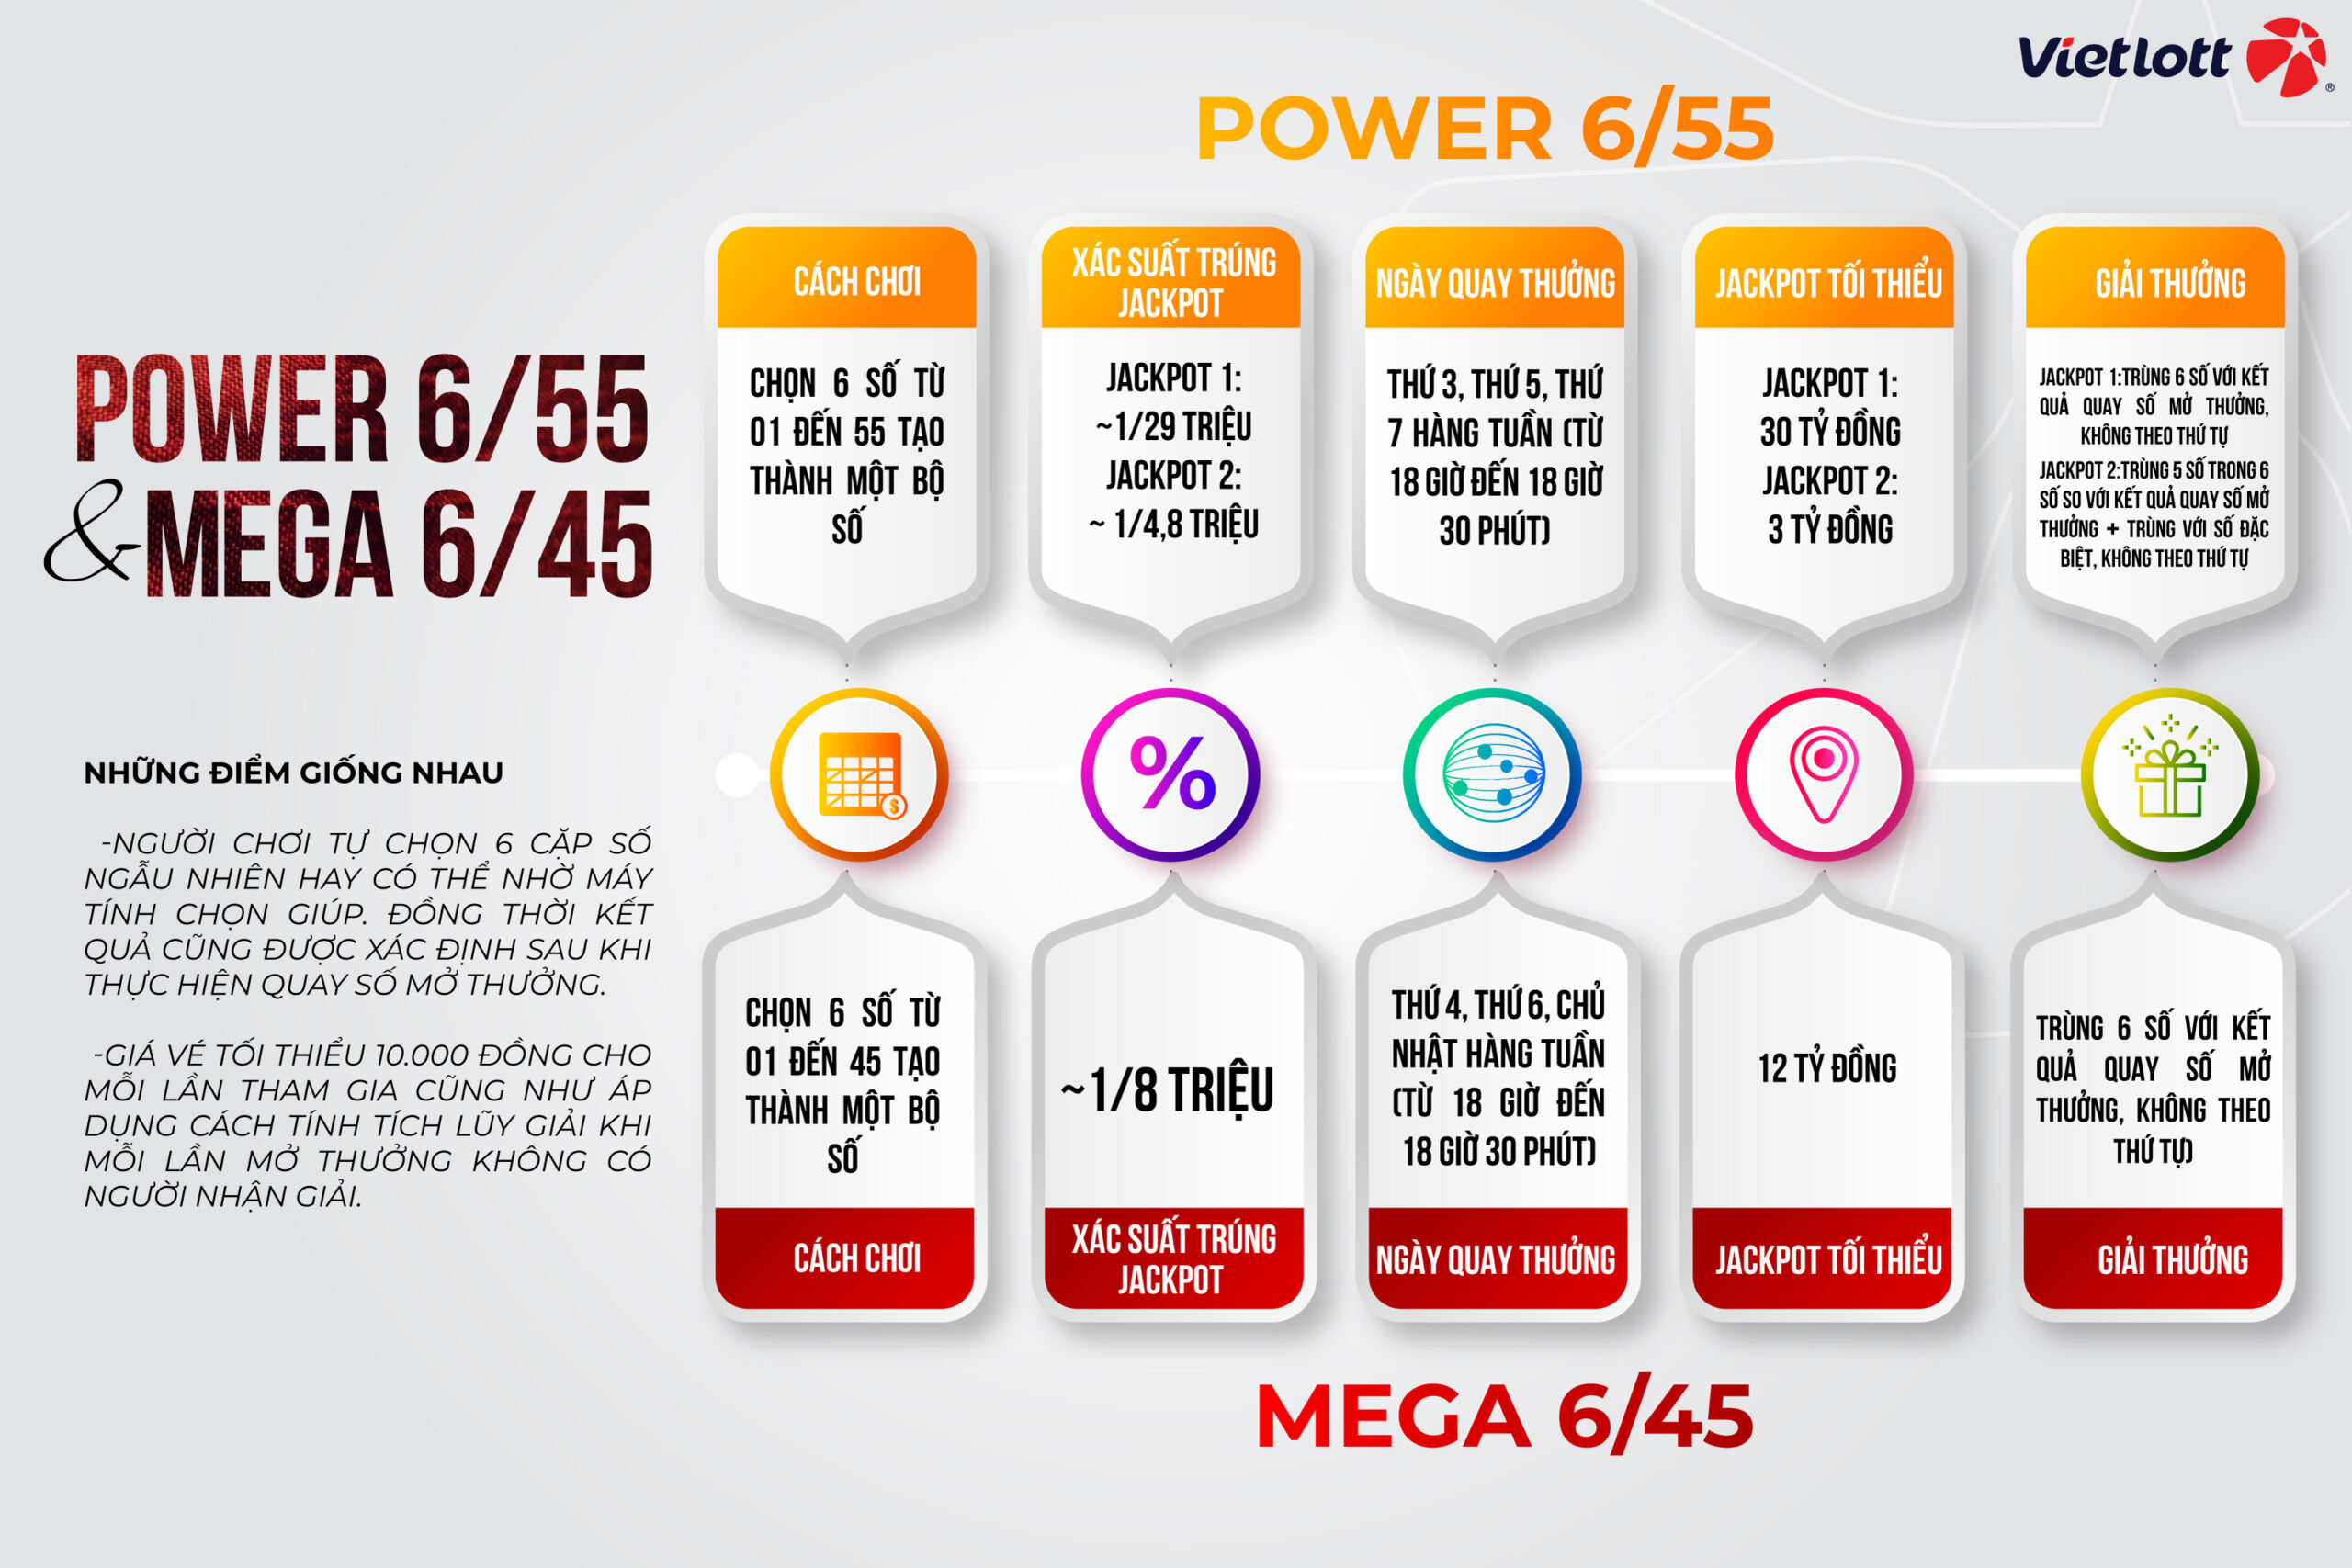 Sự khác biệt giữa Mega 6/45 và Mega 6/55